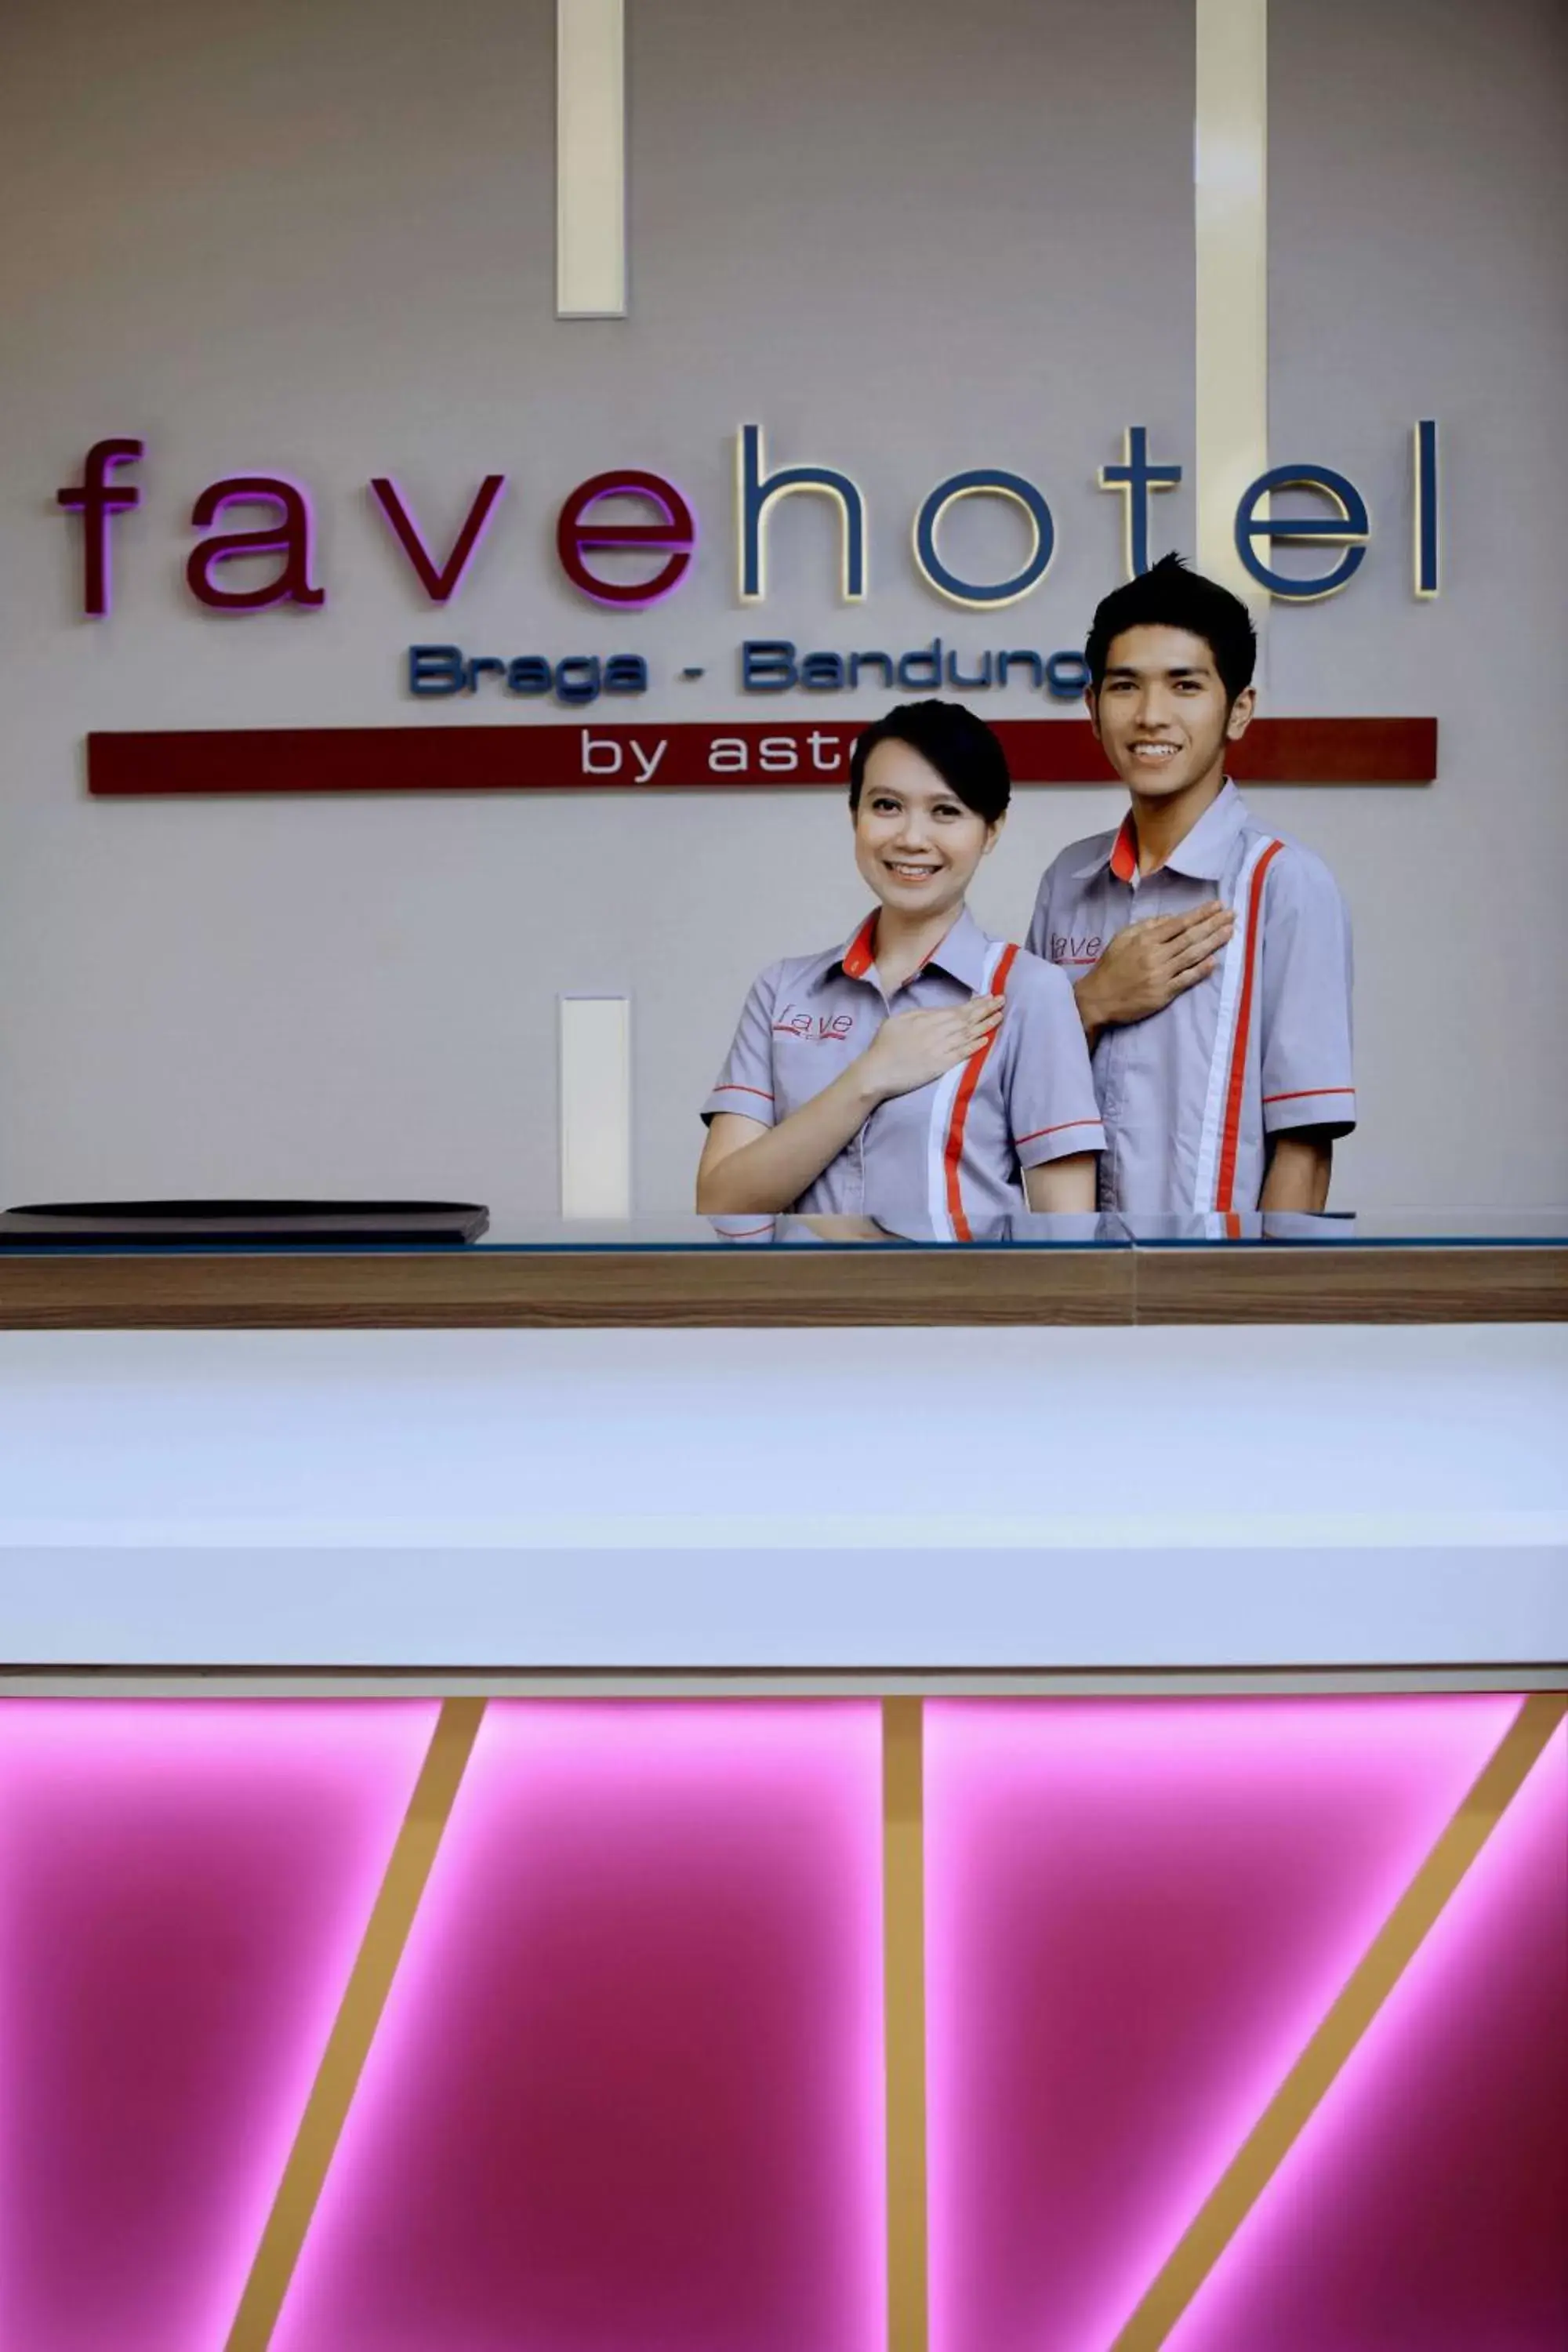 Staff, Lobby/Reception in favehotel Braga